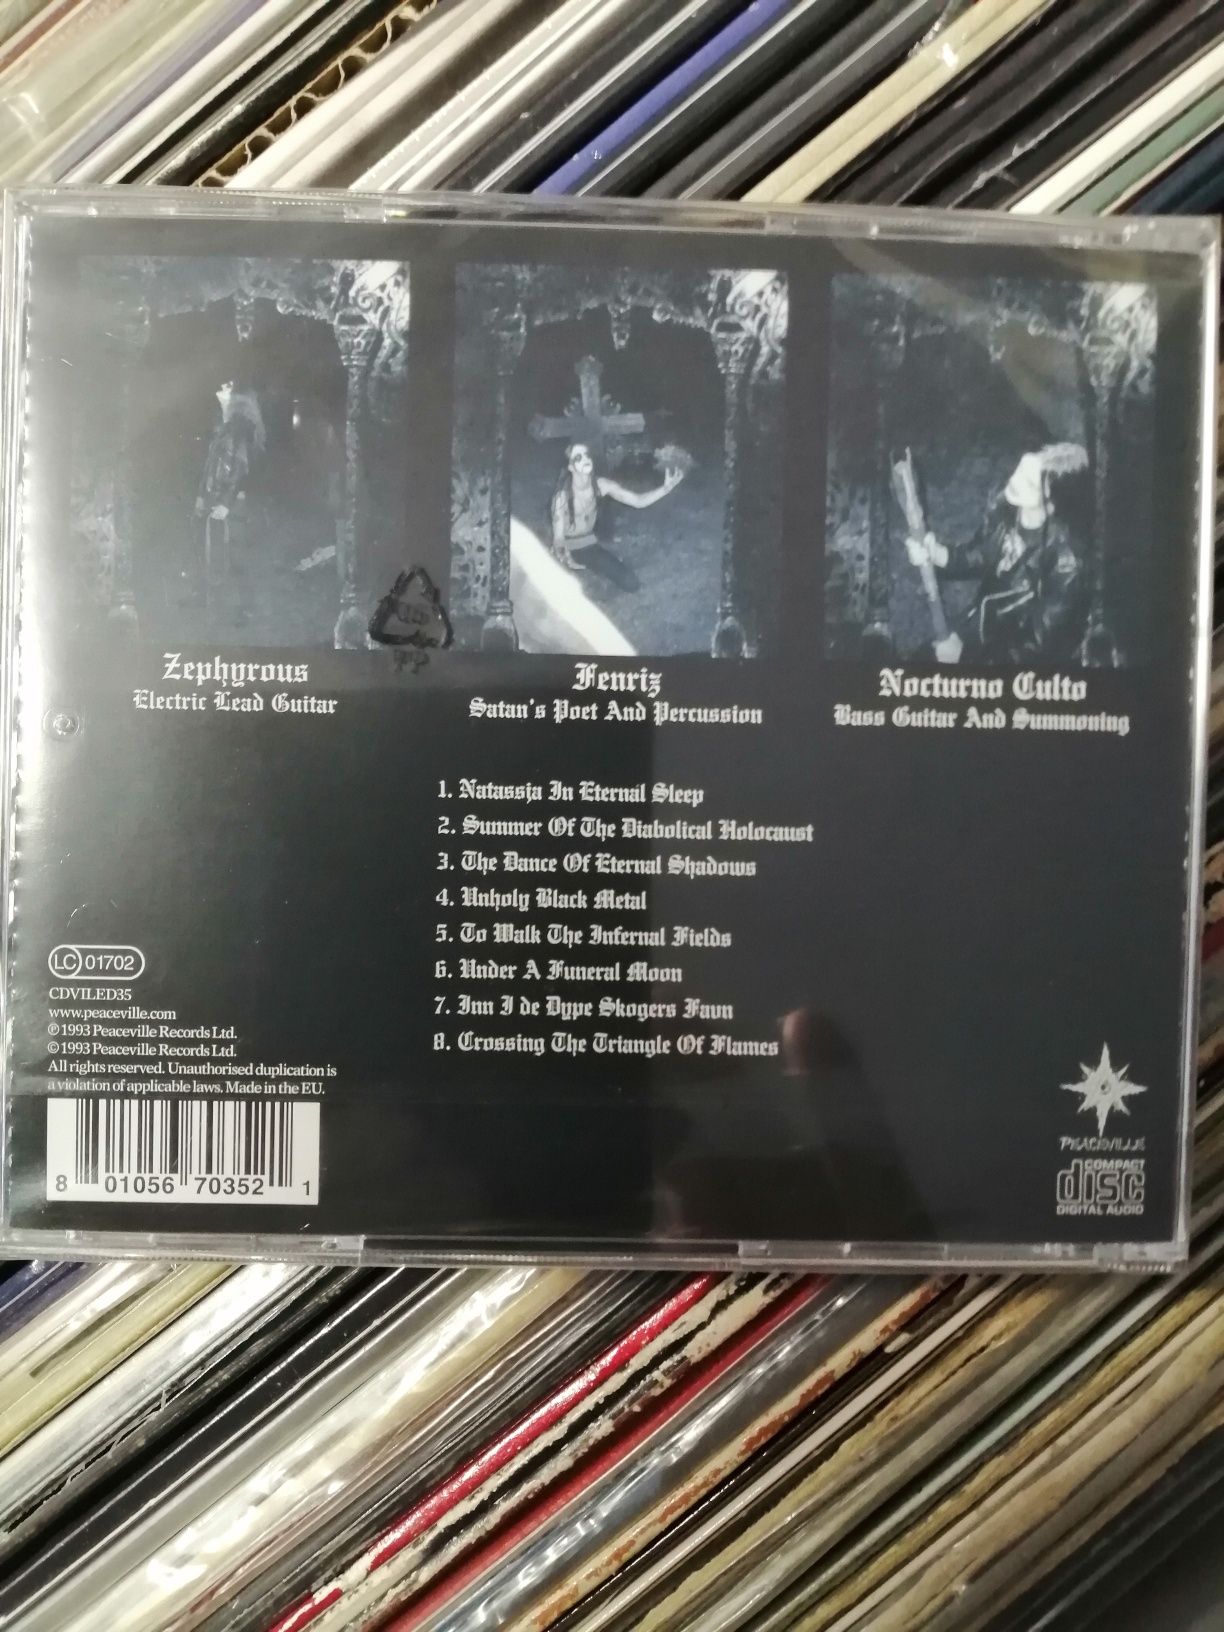 Plyta CD Darkthrone Under A Fuberal Aloon nowa folia